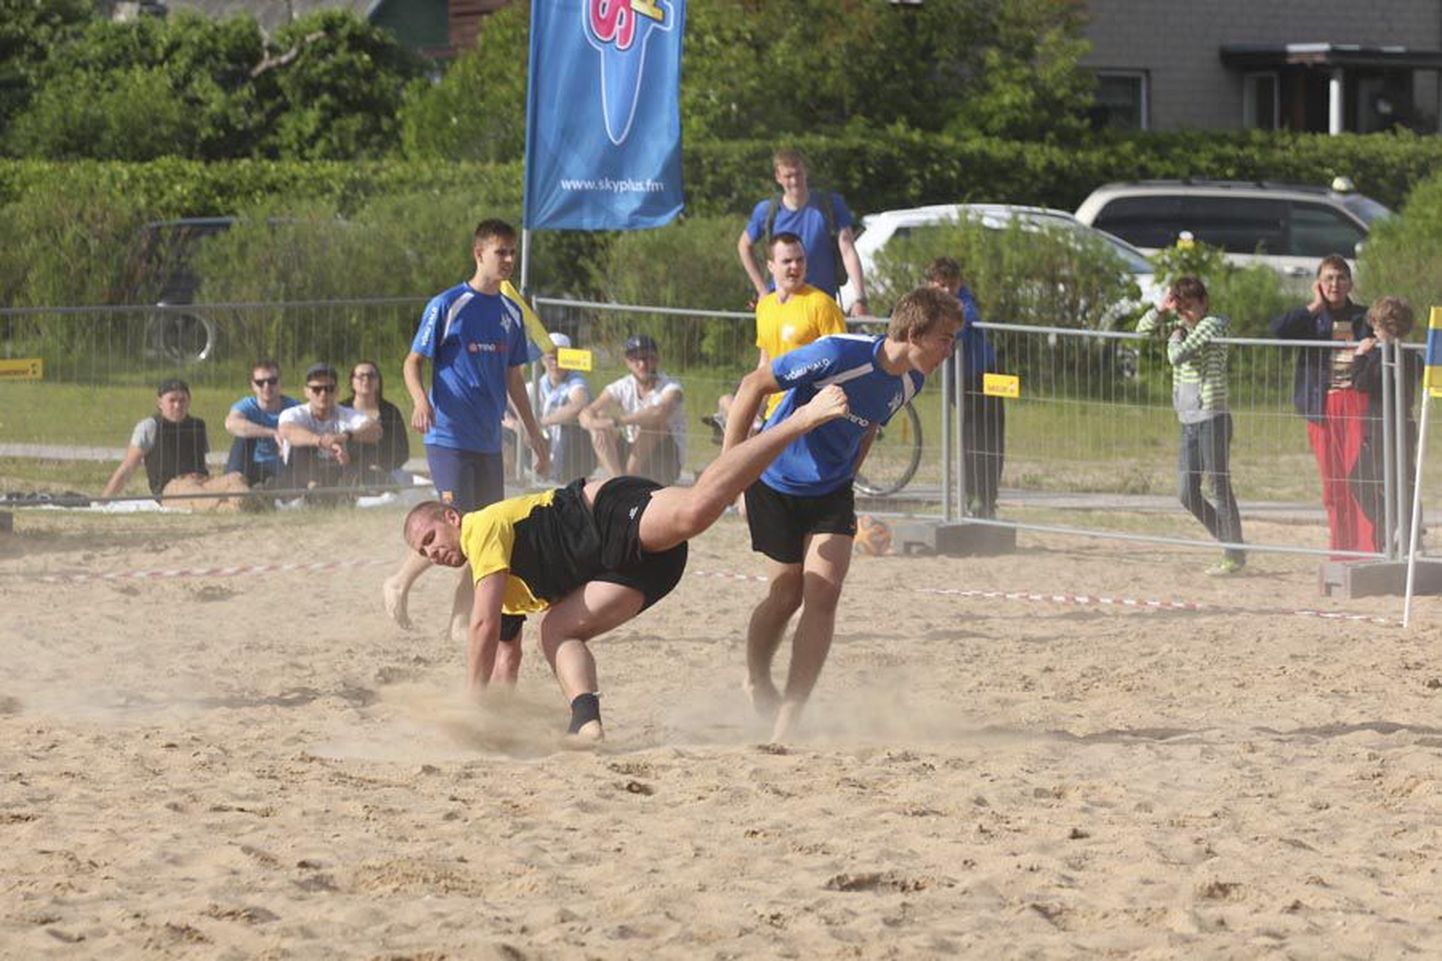 Festivali avas kolmapäeva õhtul jalgpalliturniir Viljandi rannas ning ekstreemspordivõistlustele on võimalik kaasa elada pühapäeva õhtuni.